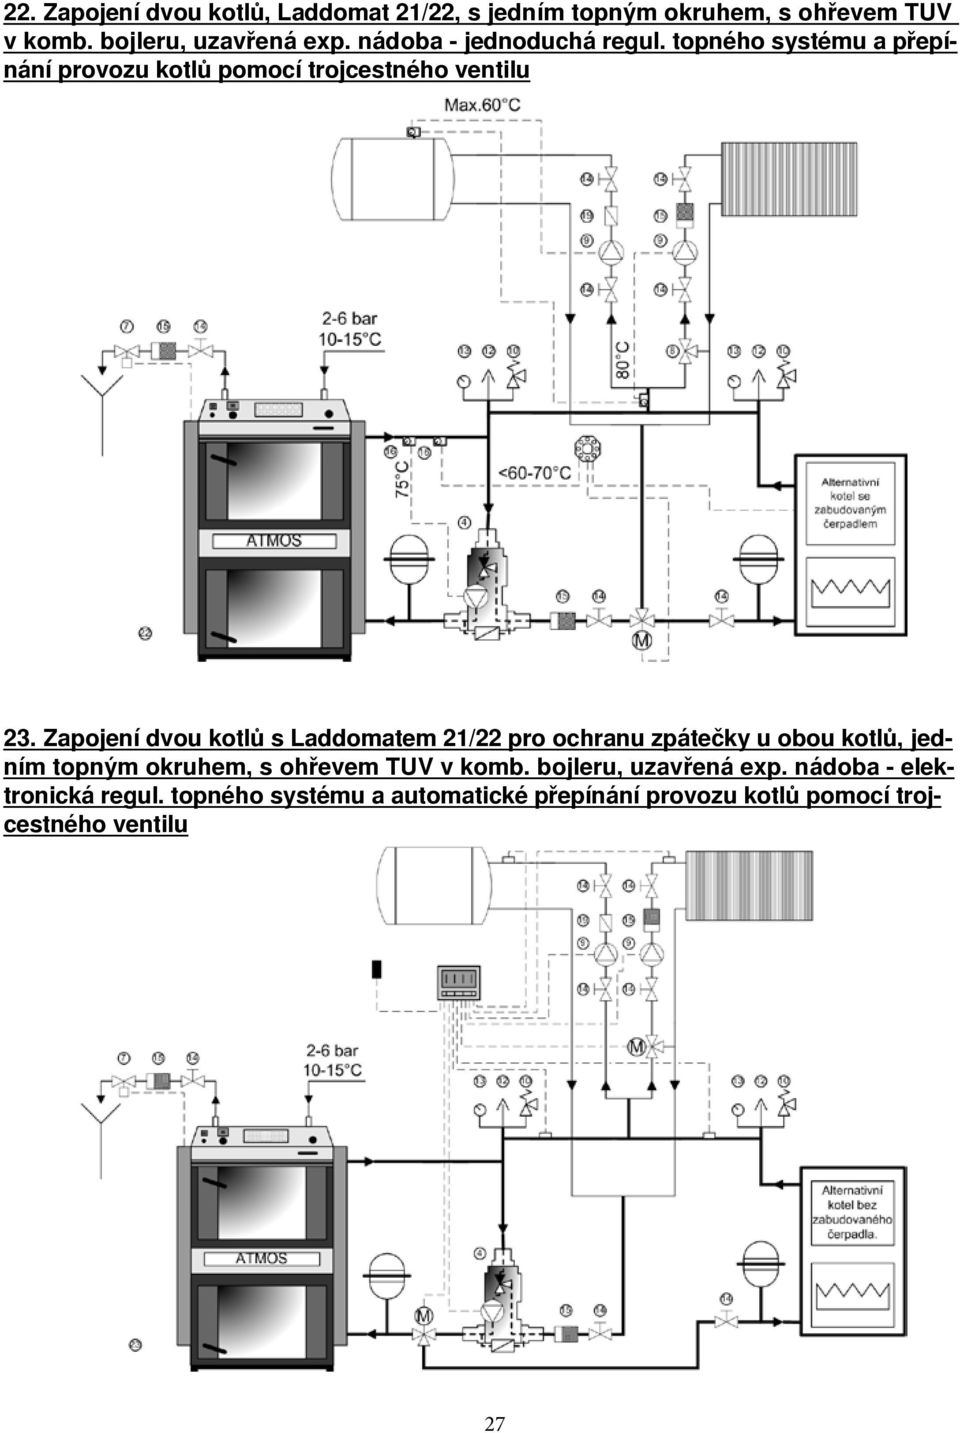 Zapojení dvou kotlů s Laddomatem 21/22 pro ochranu zpátečky u obou kotlů, jedním topným okruhem, s ohřevem TUV v